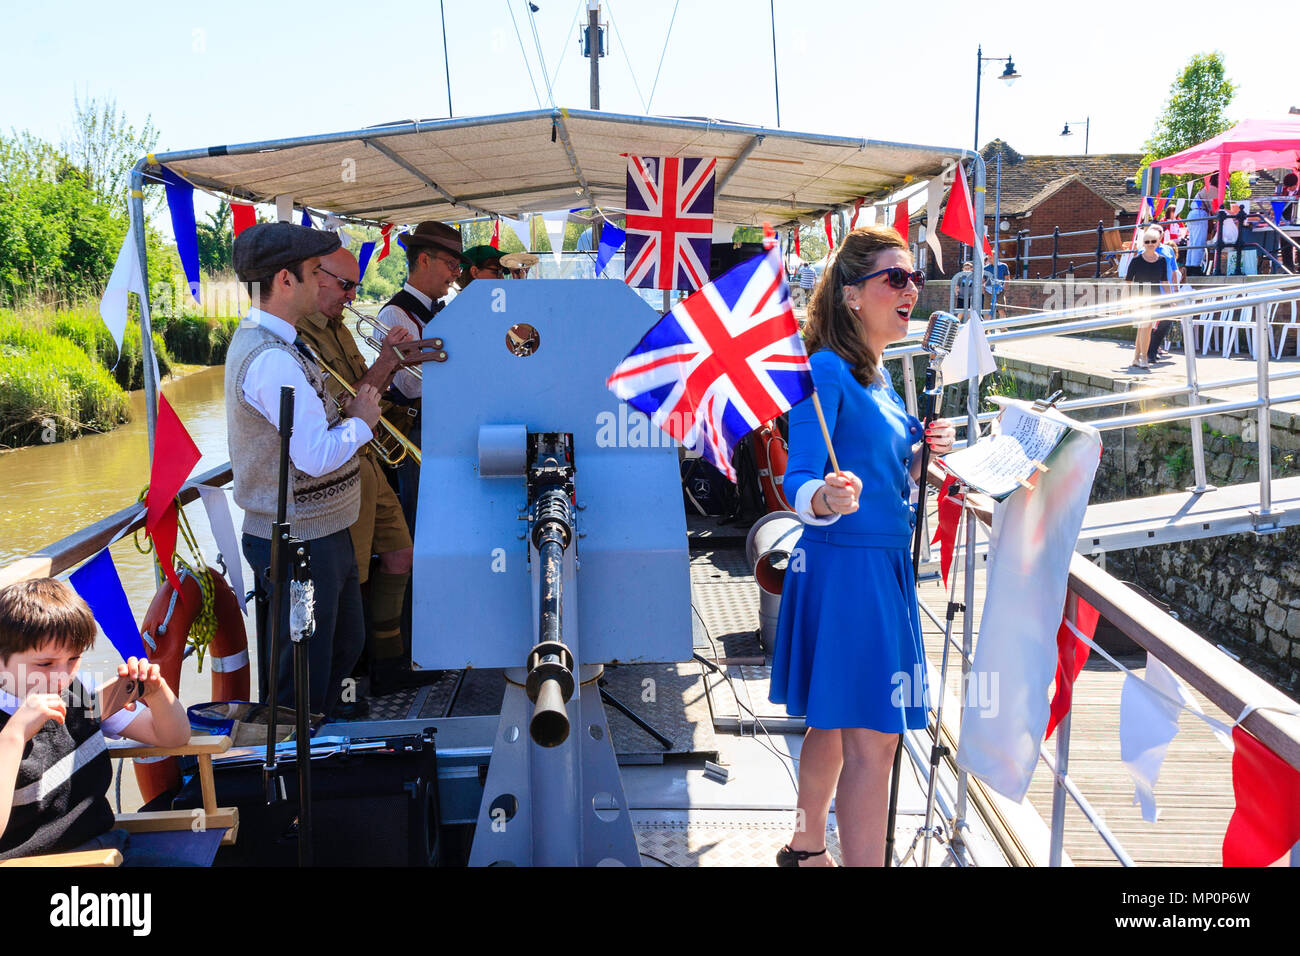 Salut à la 40s populaire événement nostalgique. La victoire de guerre groupe jouant sur pont de bateau, avec des profils femme chantant et agitant le drapeau Union Jack. Banque D'Images